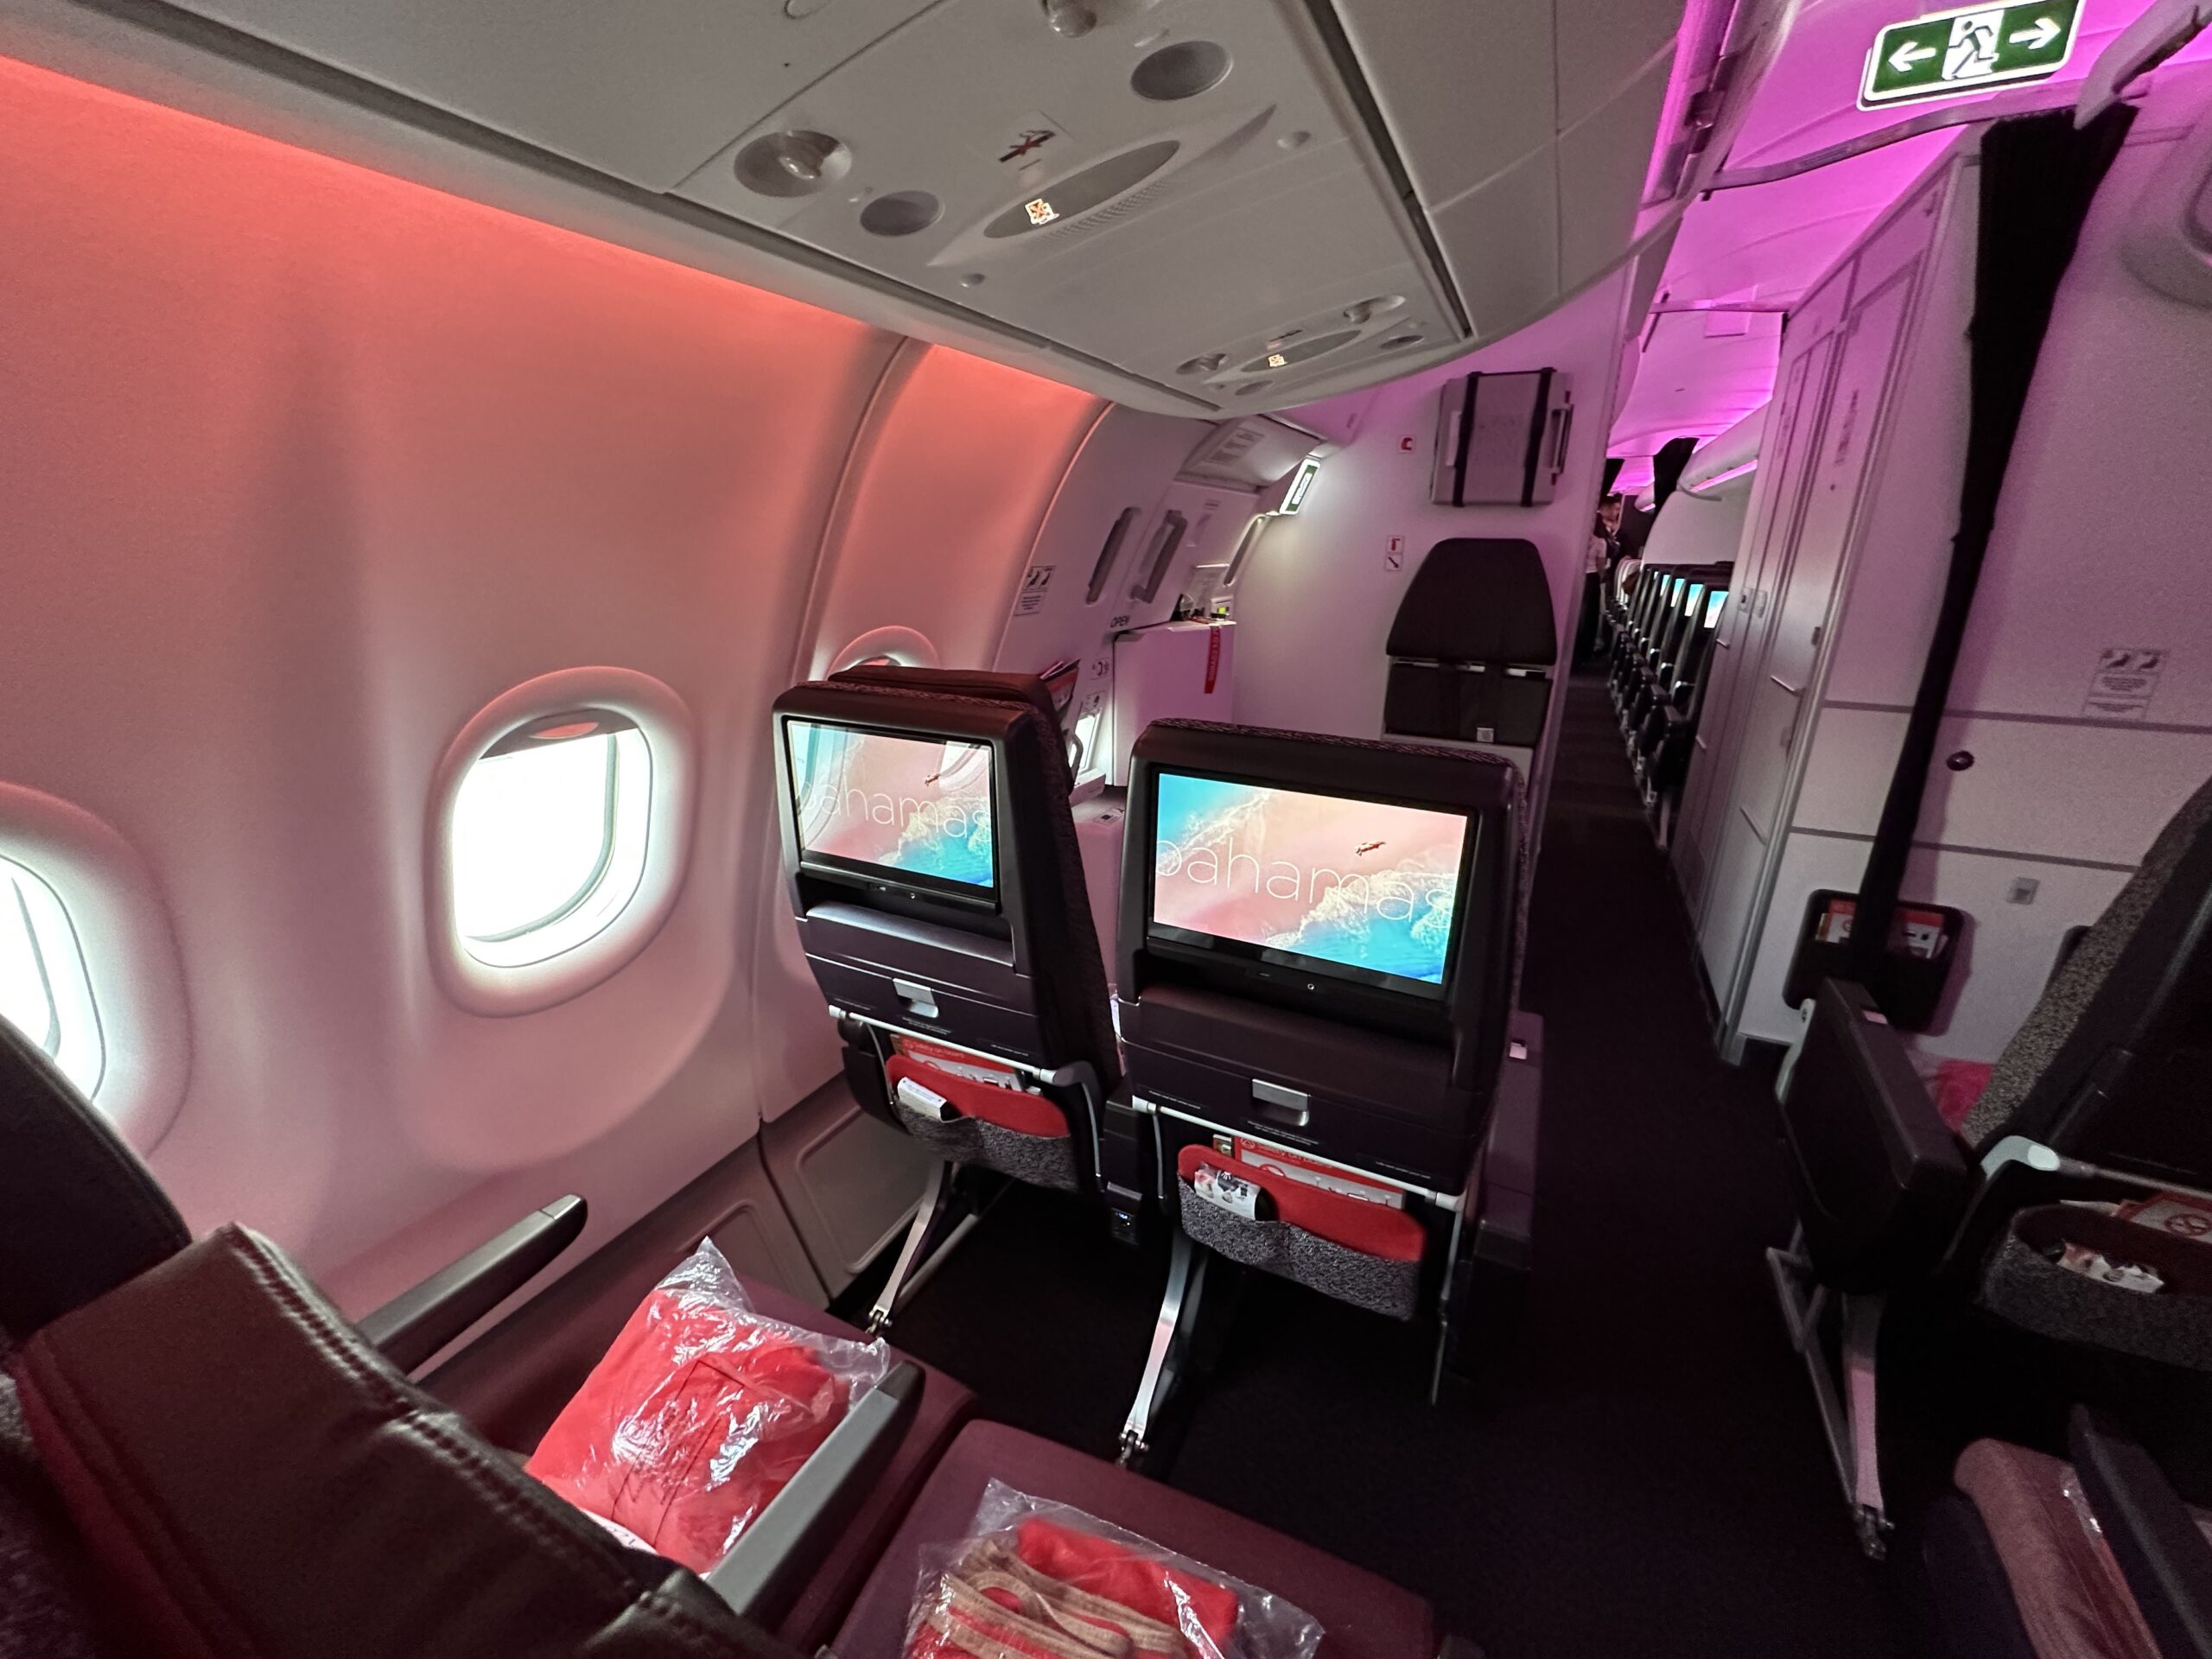 Virgin Atlantic Adds Flights To Bengaluru